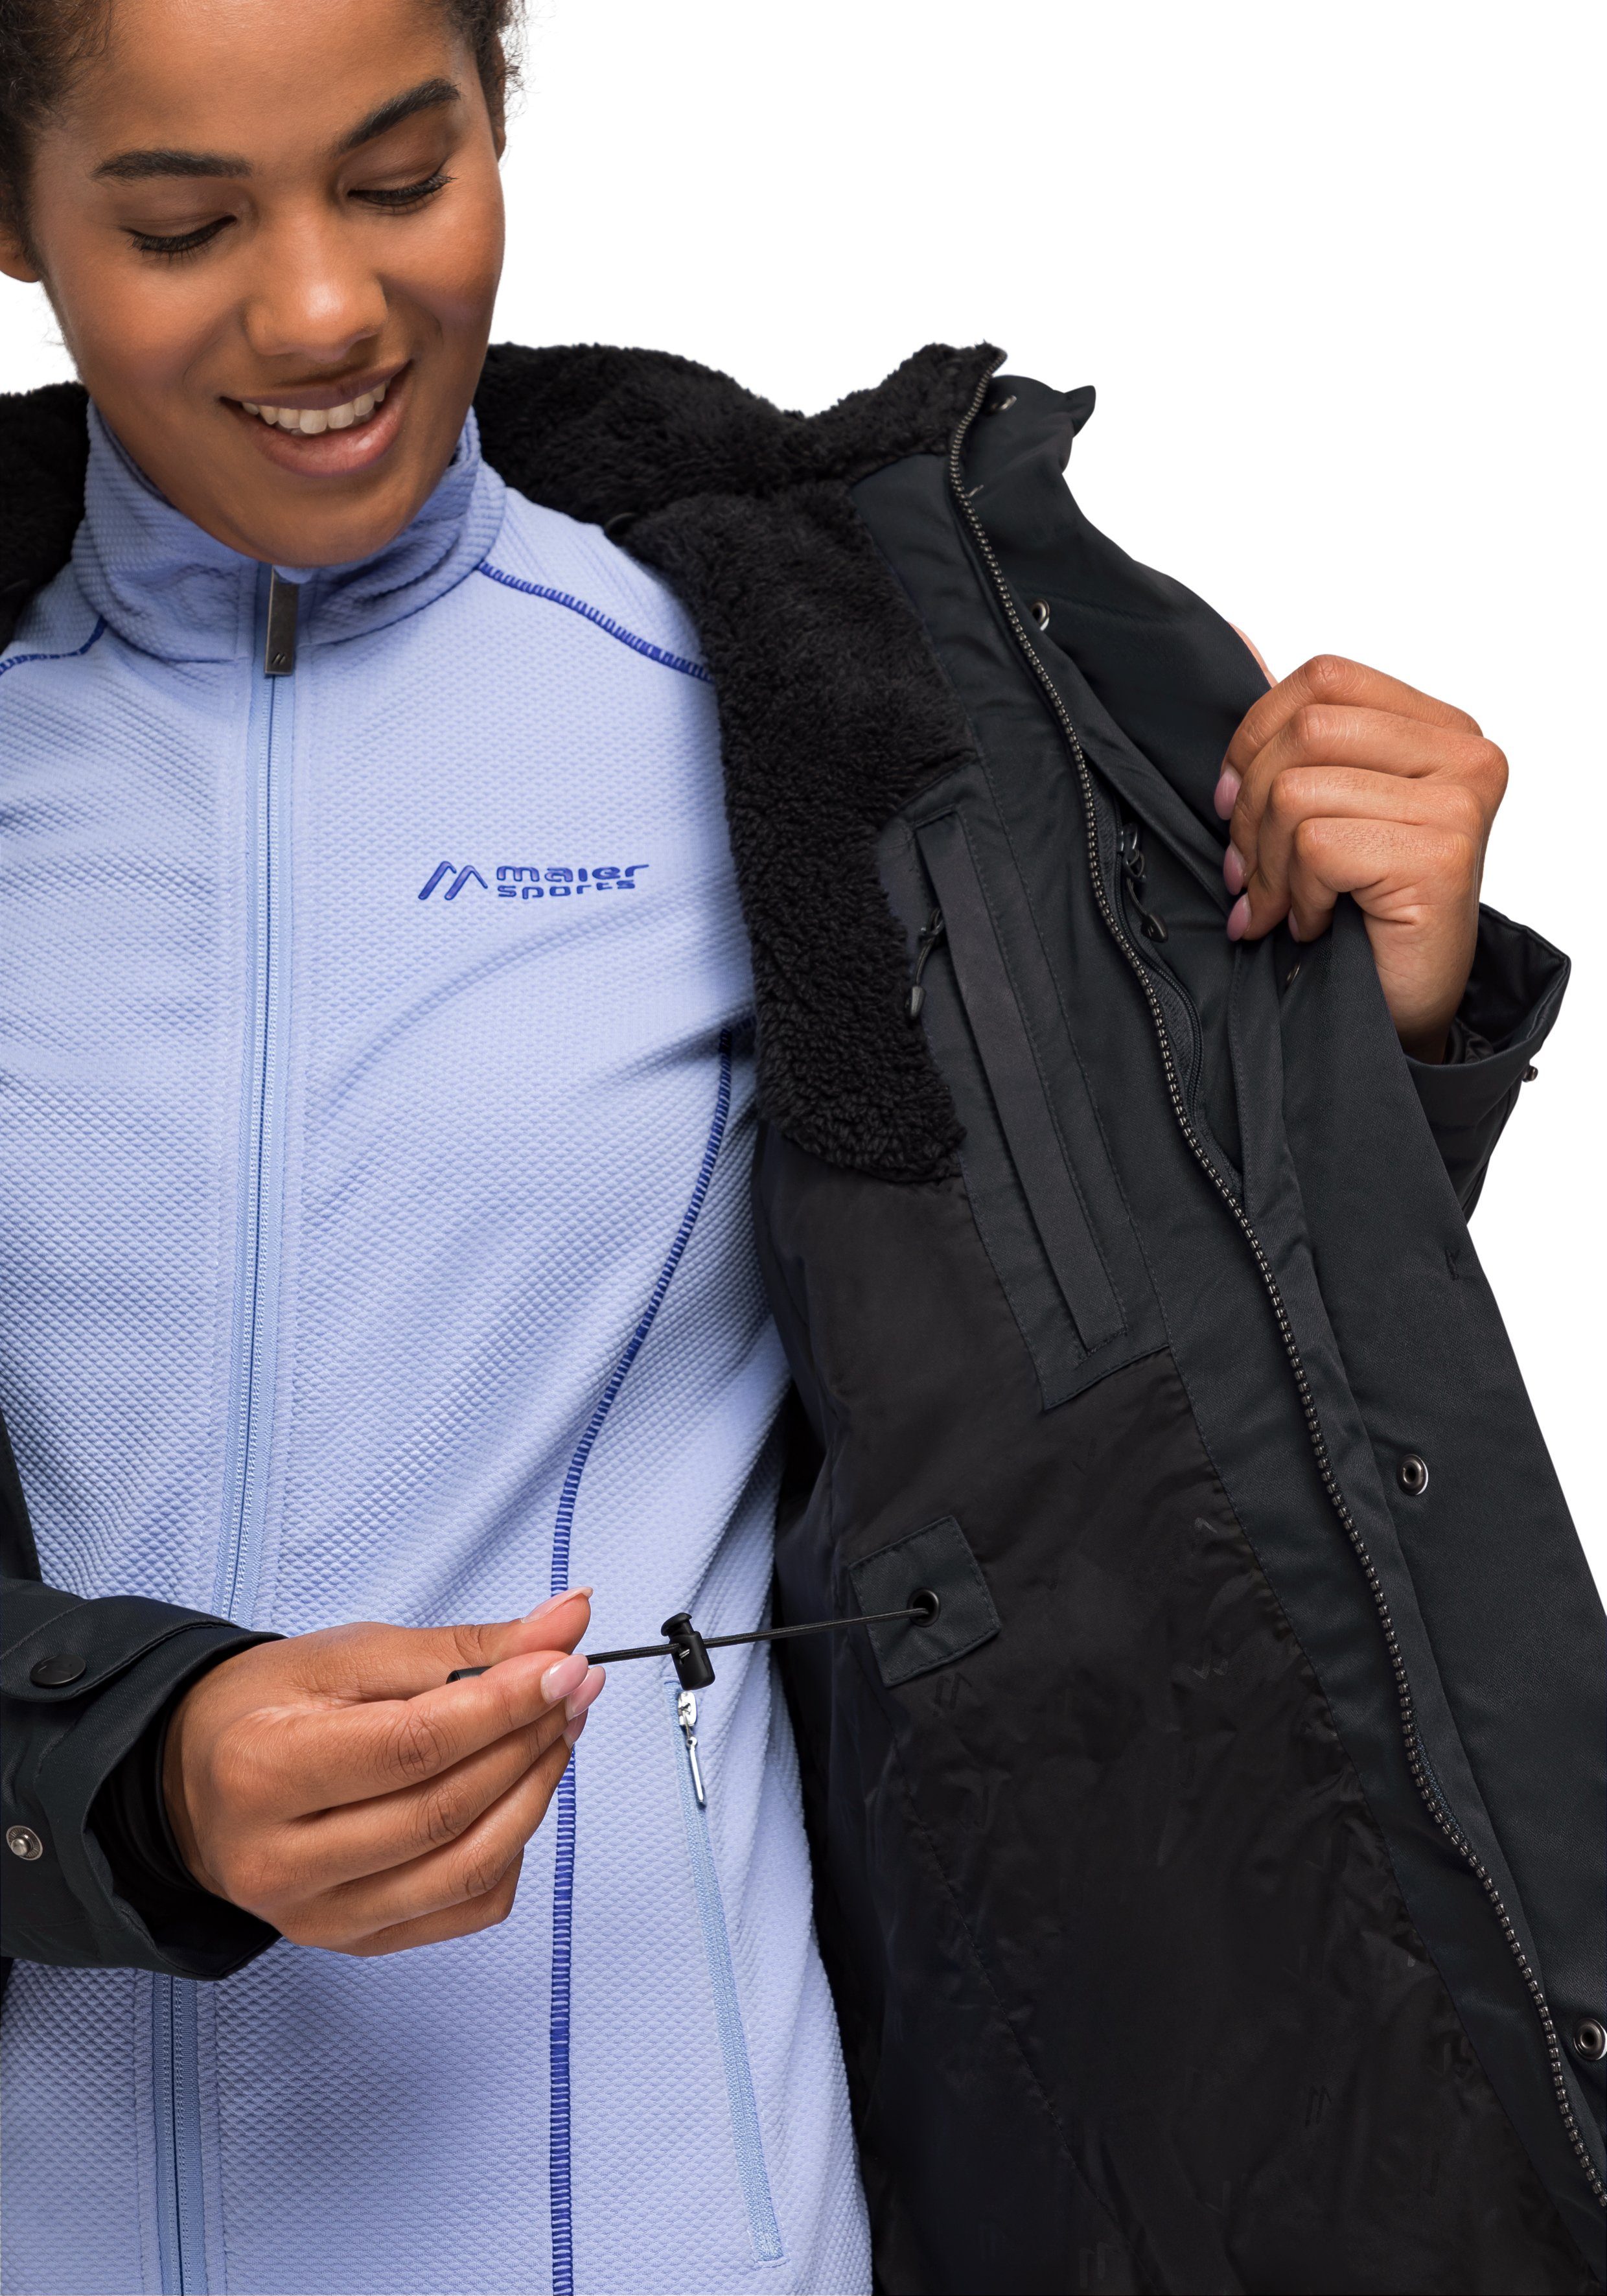 Maier Sports vollem mit 2 Lisa Funktionsjacke Wetterschutz schwarz Outdoor-Mantel